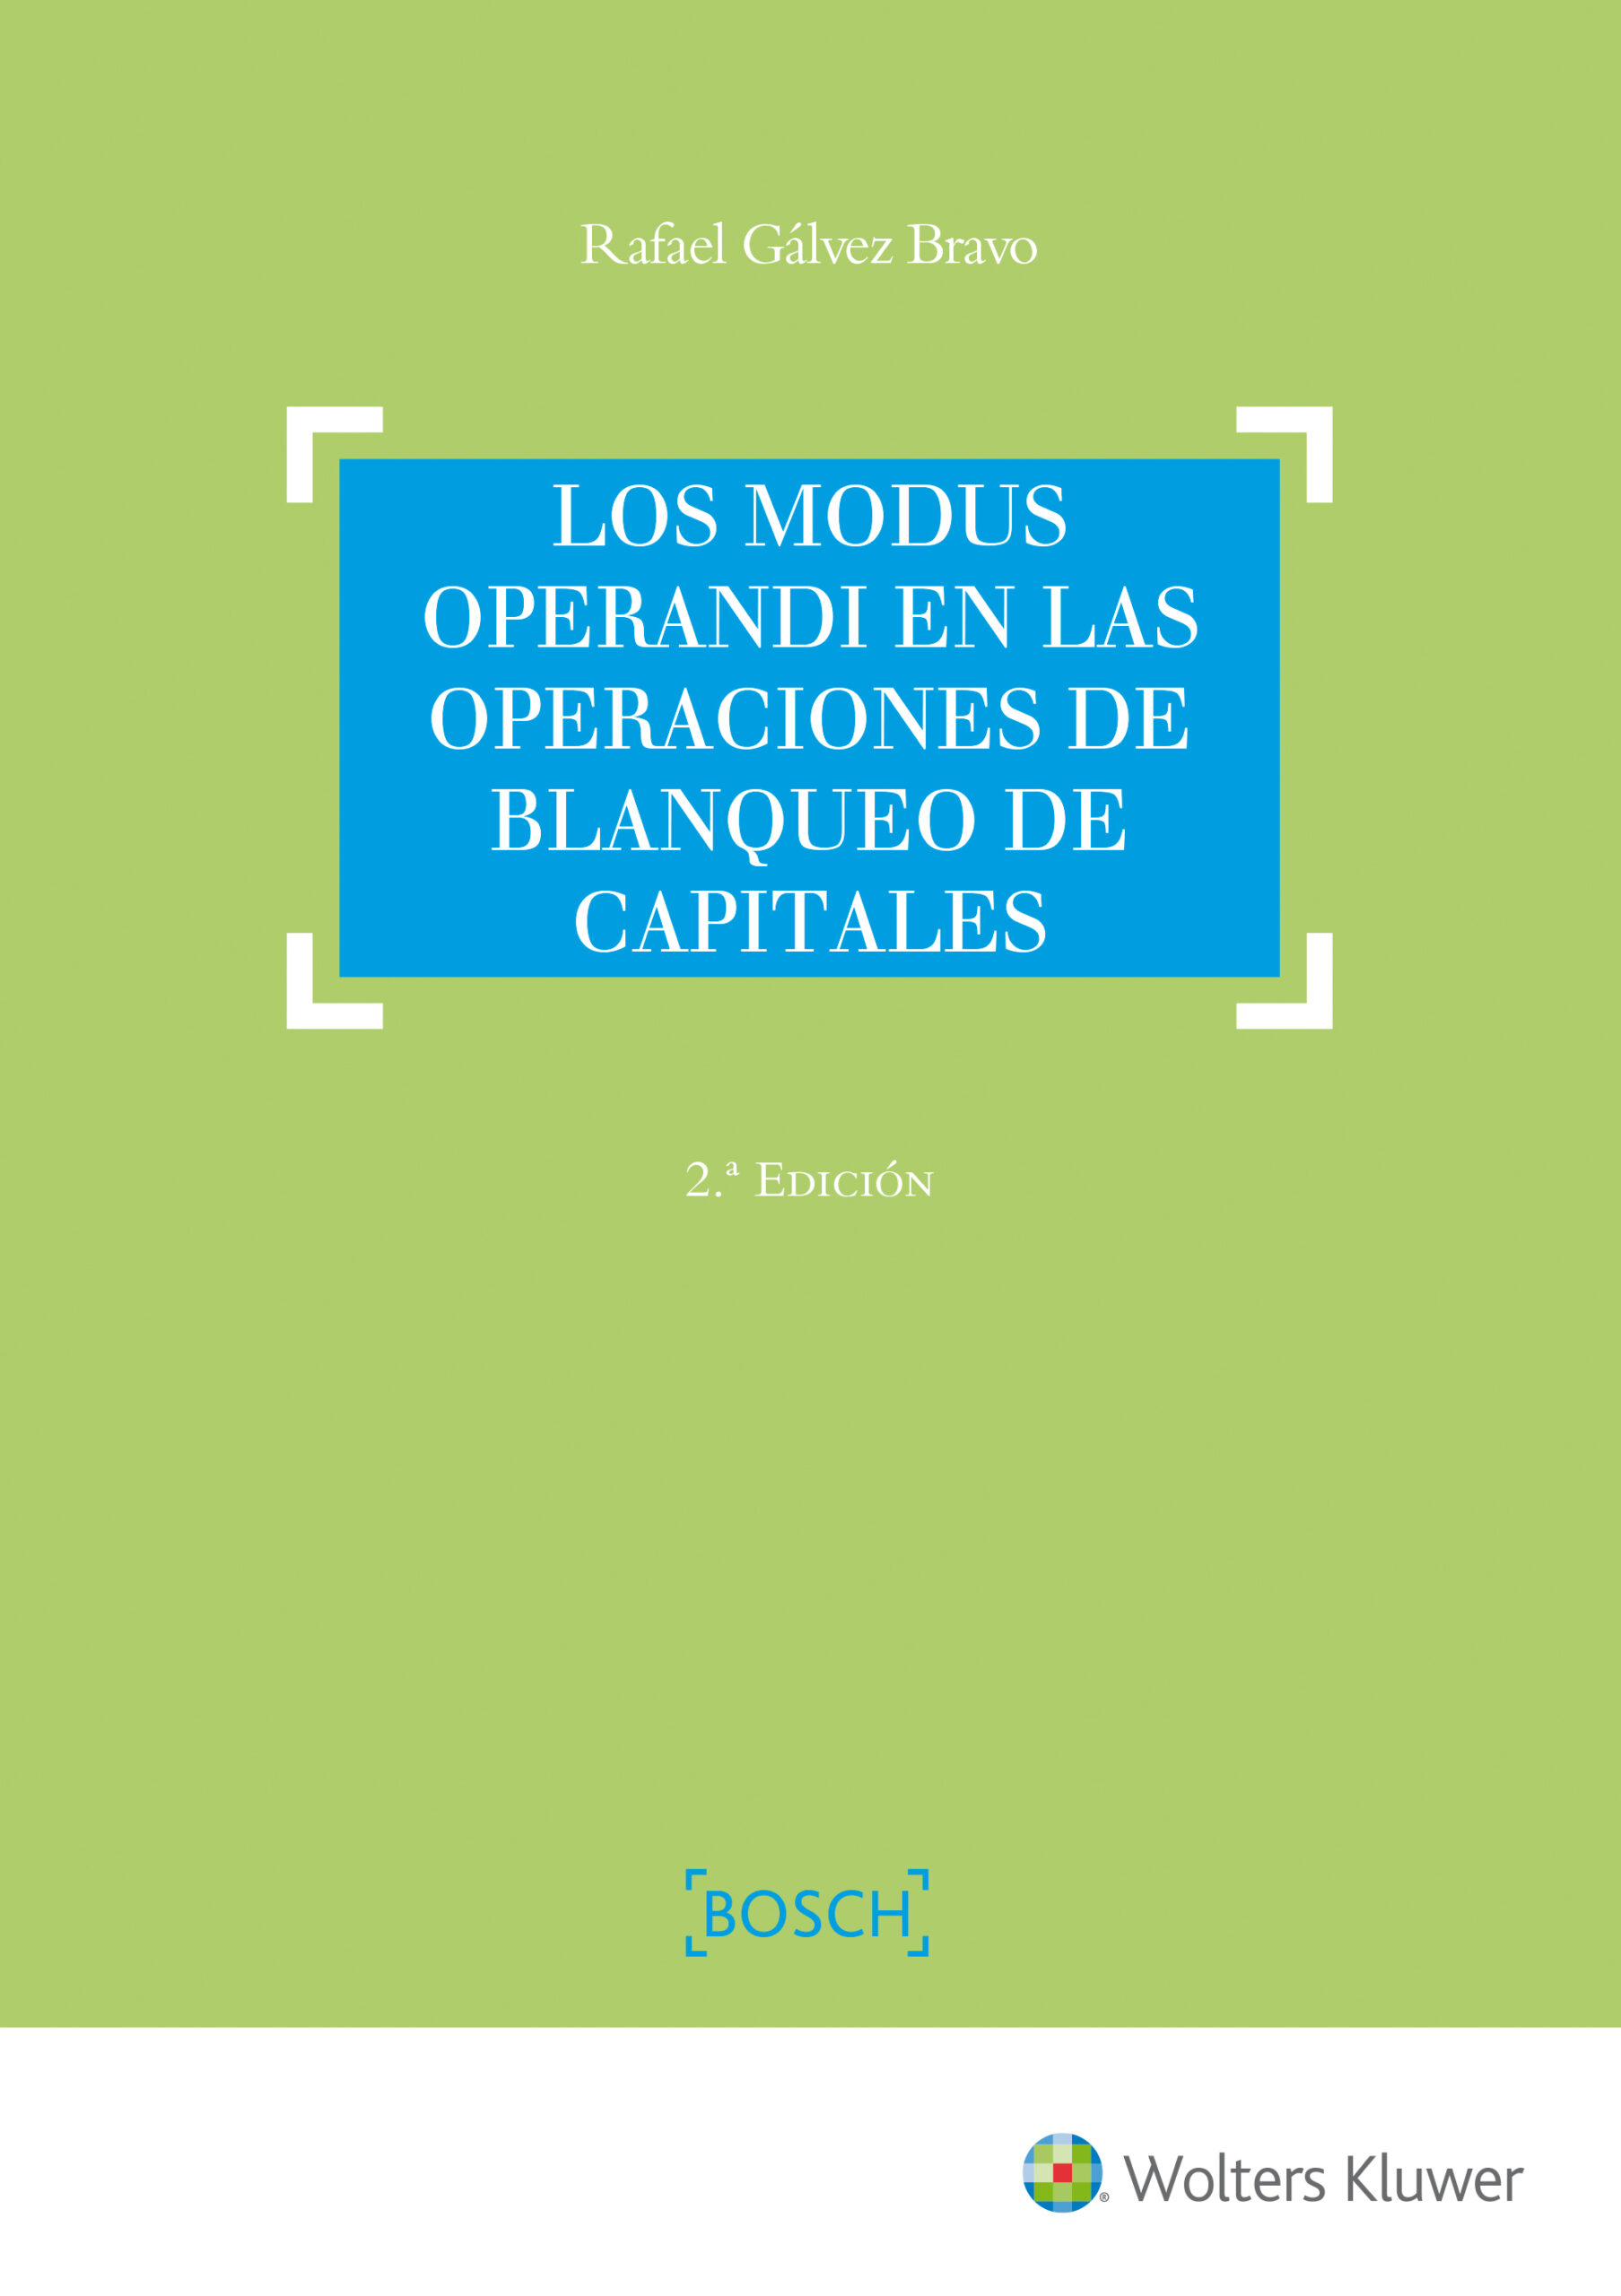 MODUS OPERANDI EN LAS OPERACIONES DE BLANQUEO DE CAPITALES